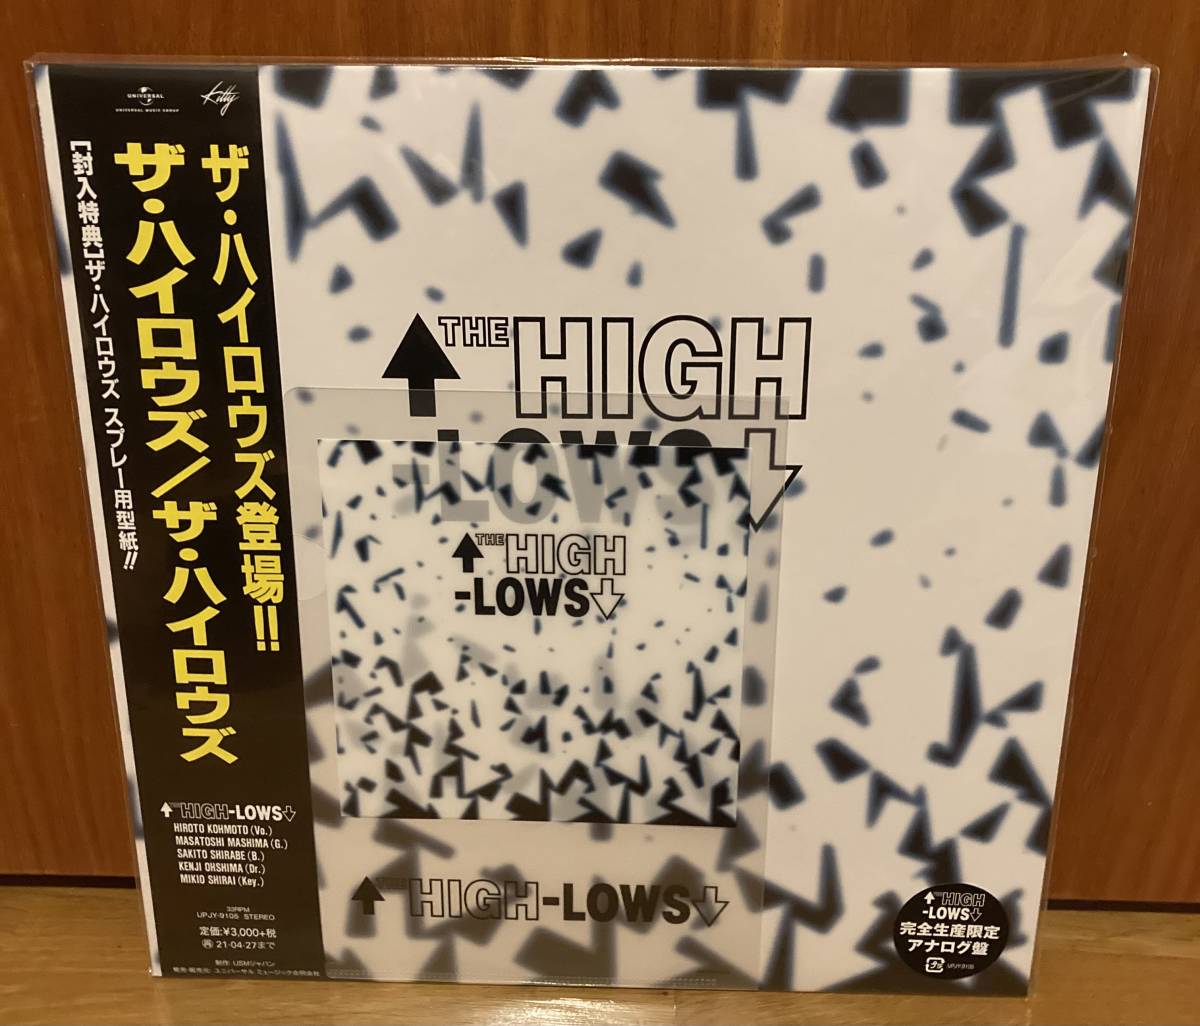 ハイロウズ 1st レコード オリジナル盤 見本品-